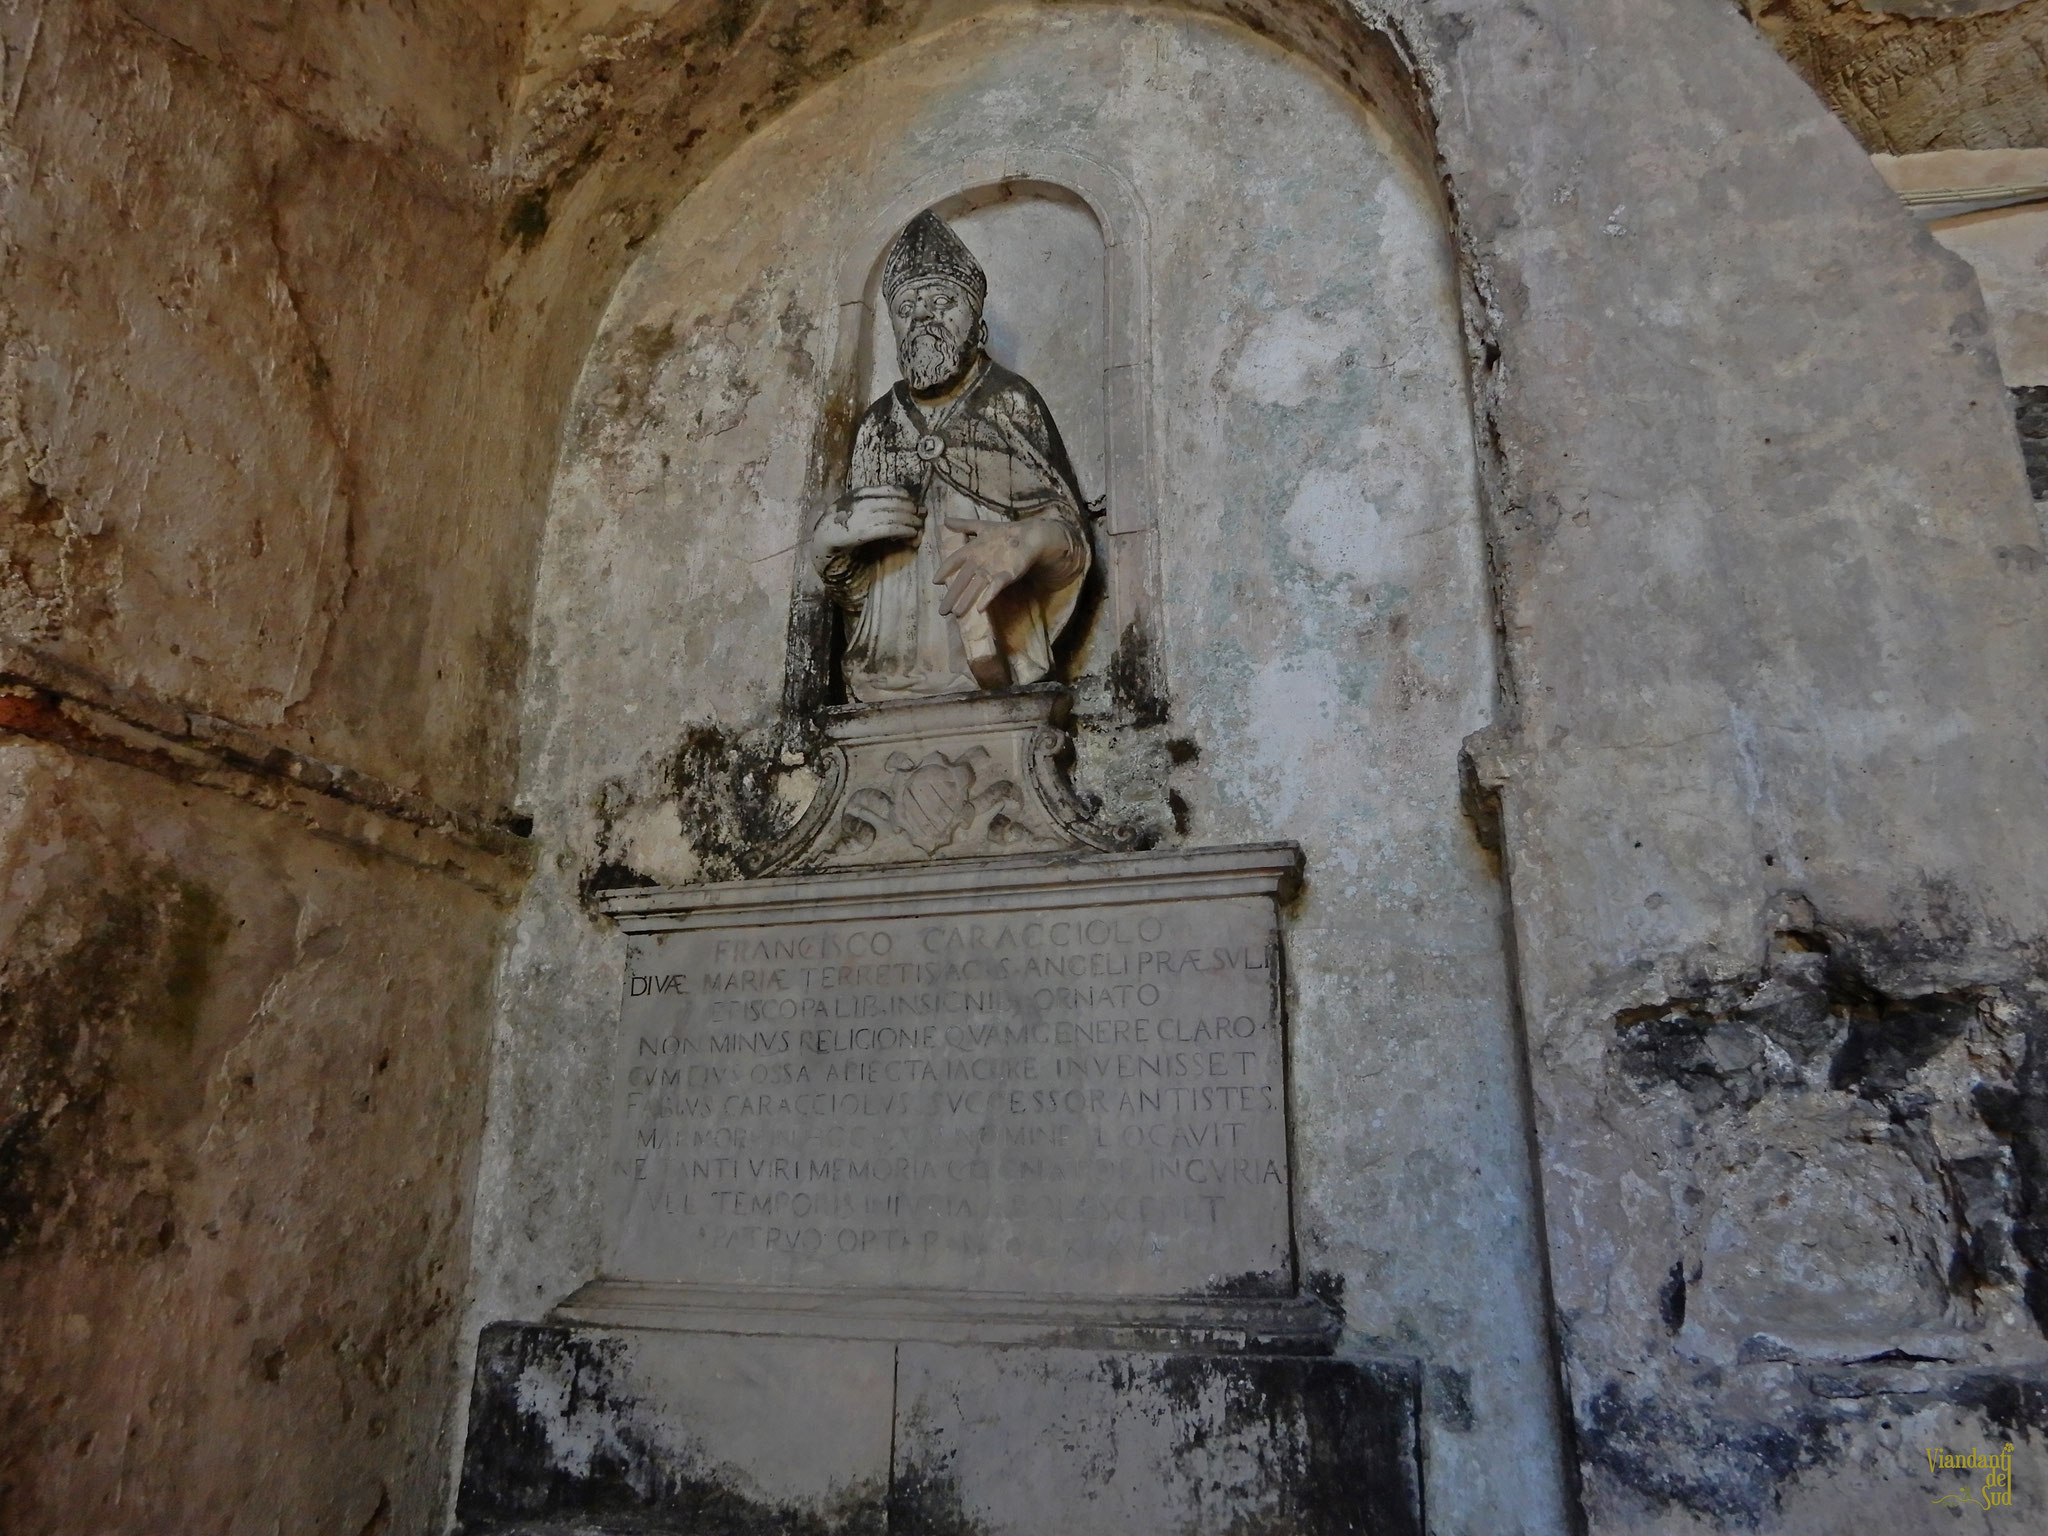 Entrando nella grotta, guardando di fronte, si può ammirare un monumento funerario del 1585 dell’Abate Francesco Caracciolo